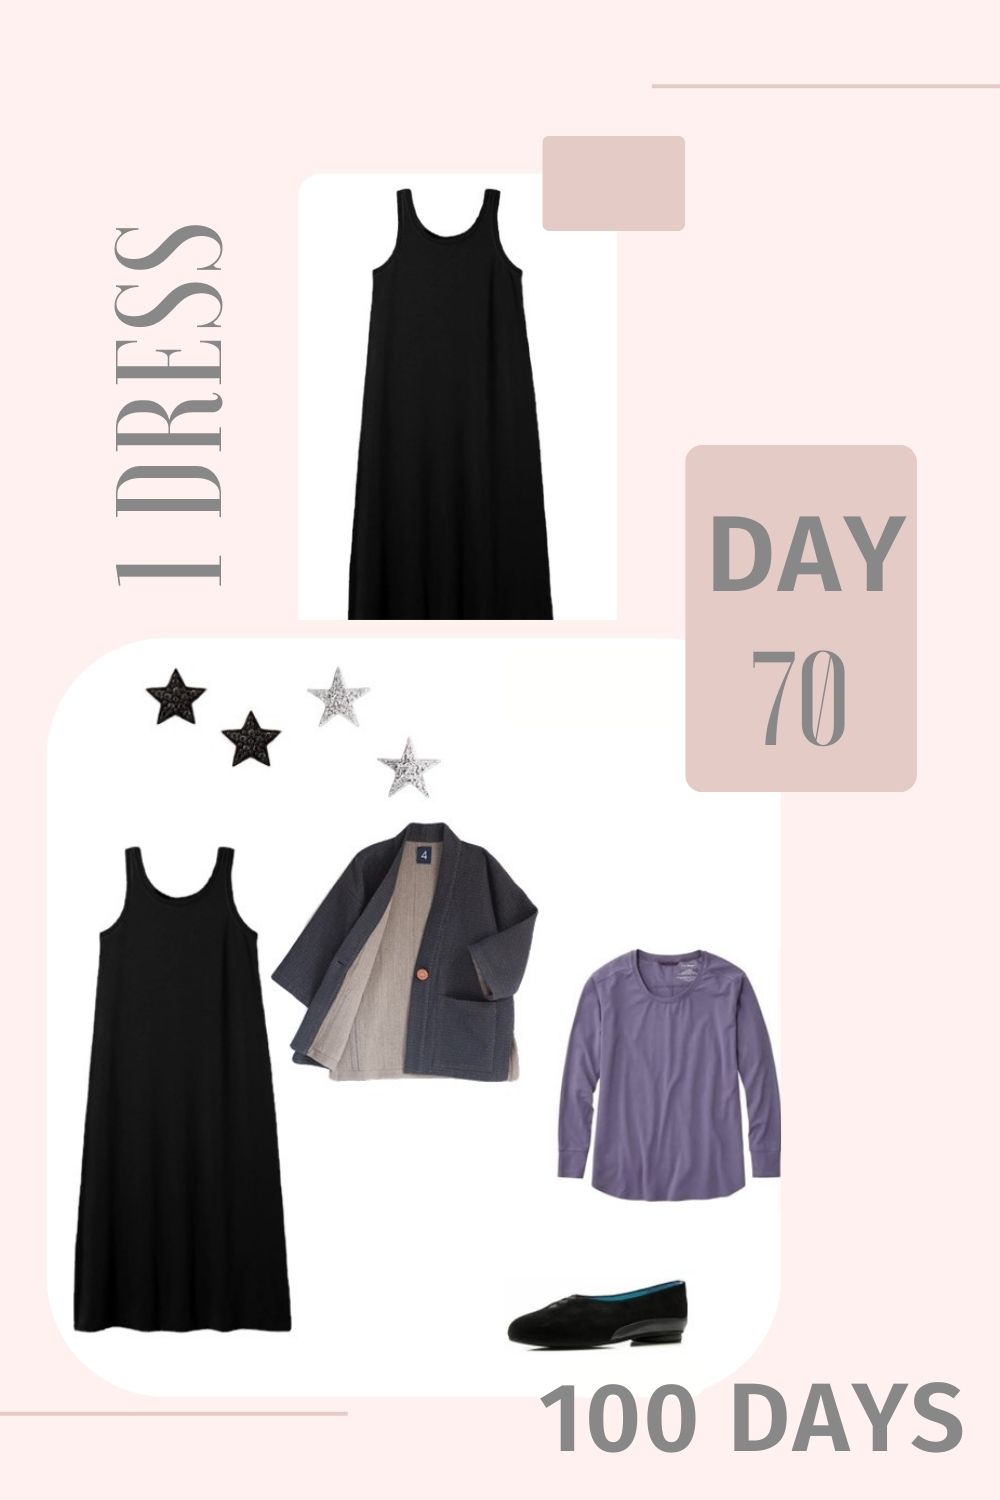 1 Dress 100 Days - Day 70